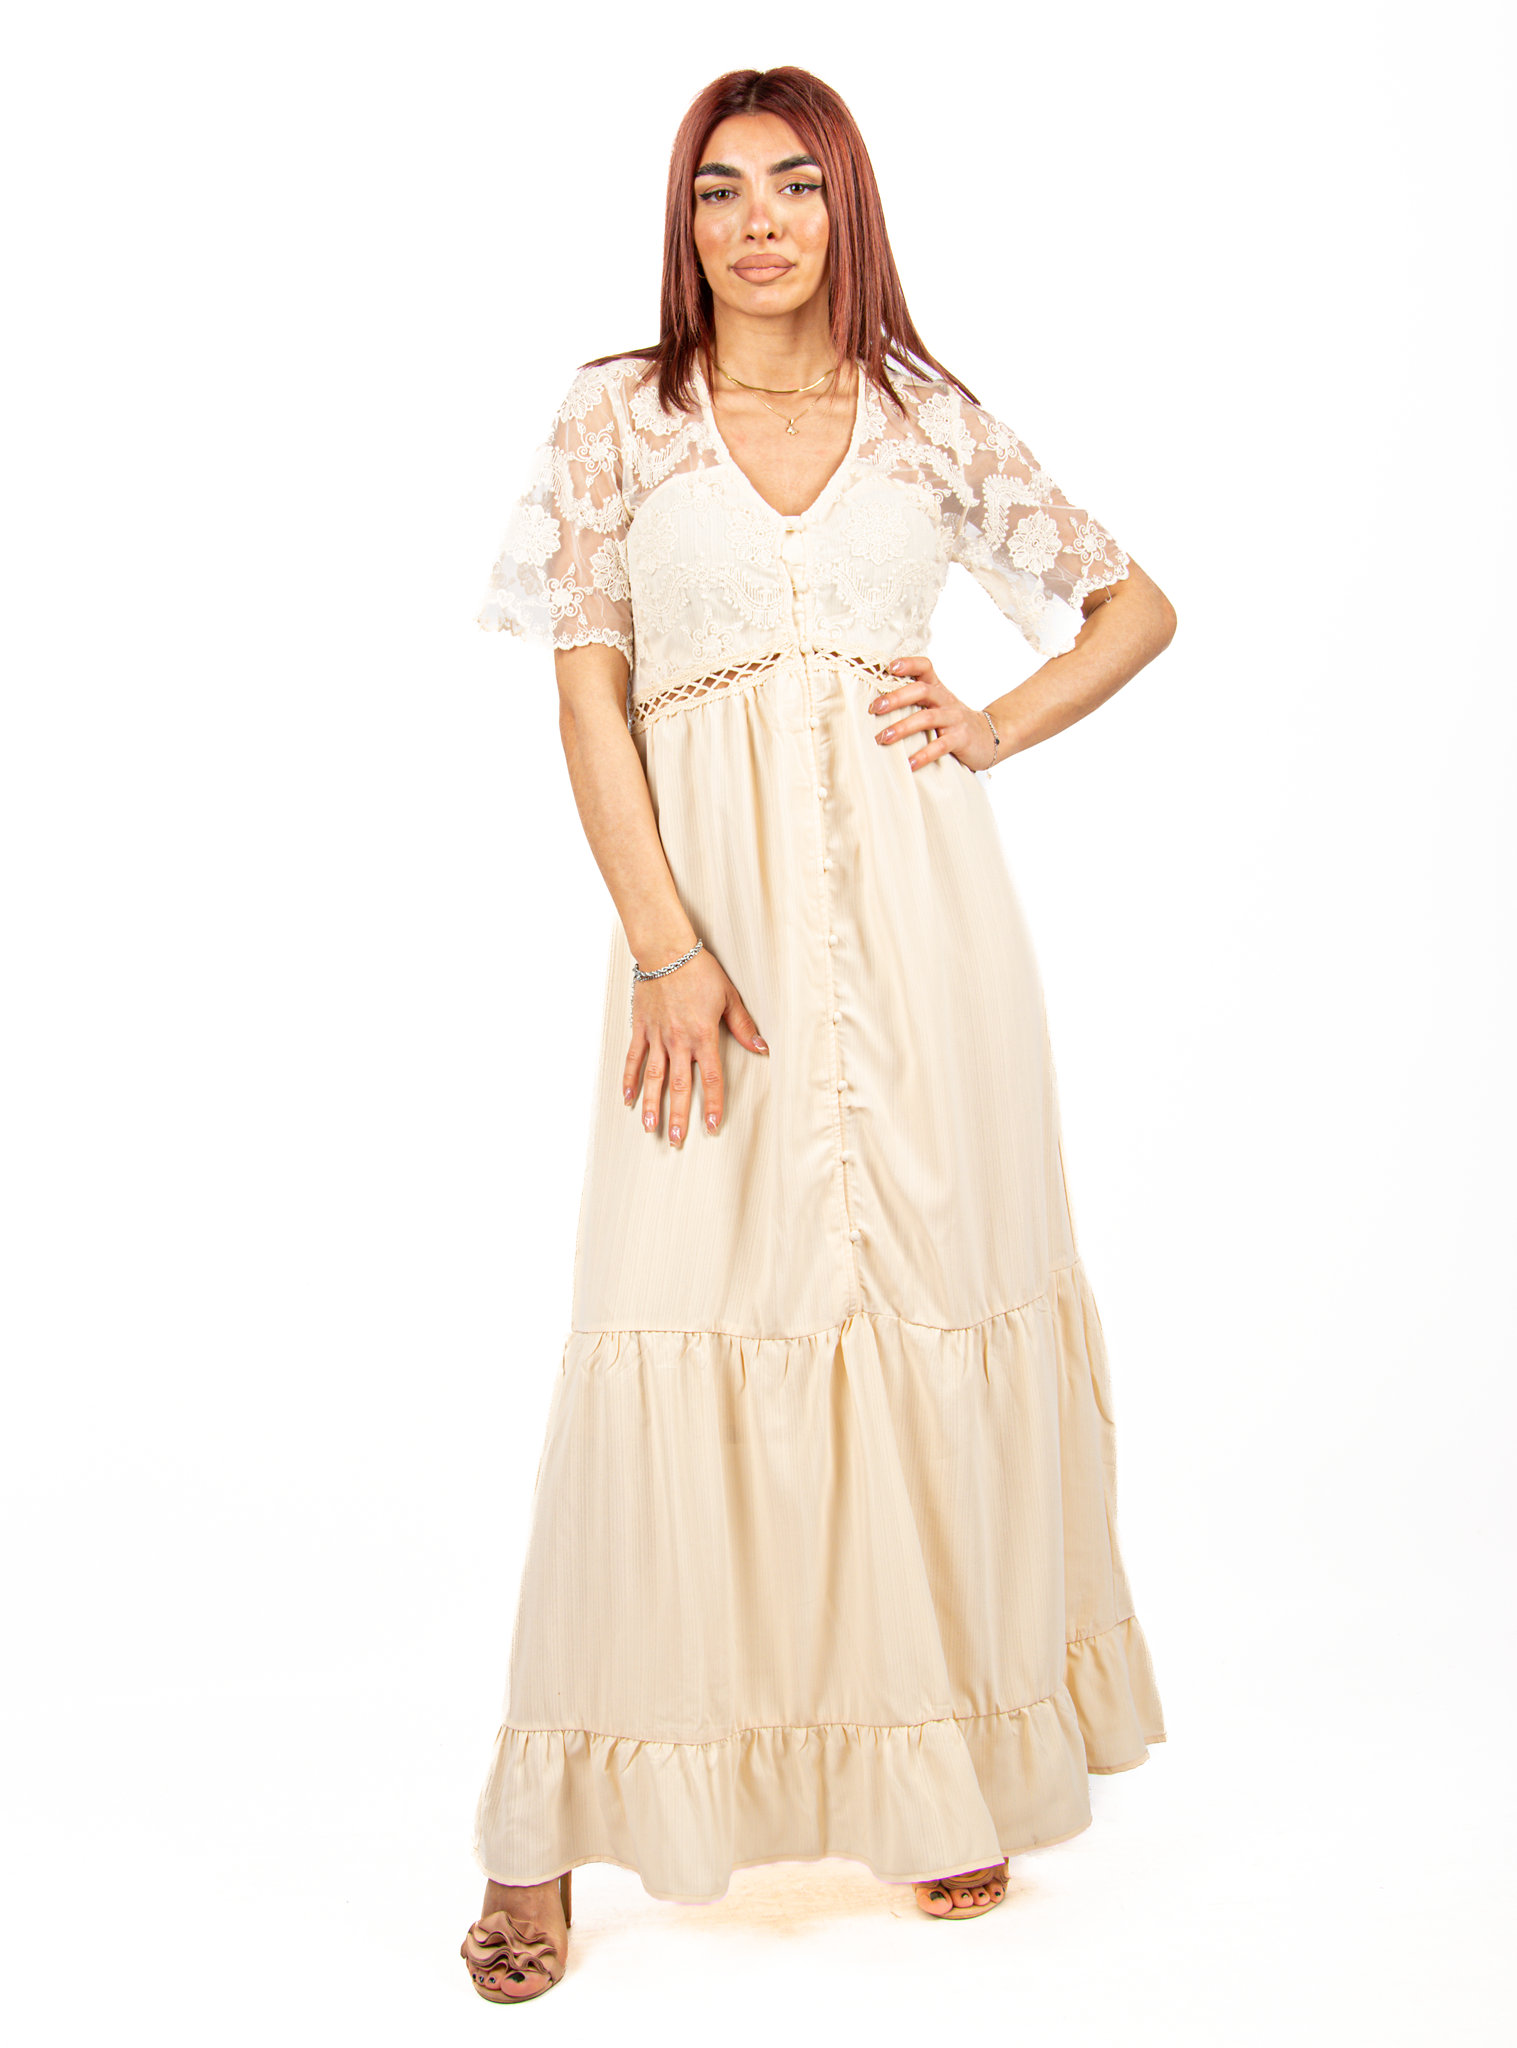 Φόρεμα Ρομαντικό Σεμιζιέ με Δαντέλα Μπεζ | EllenBoutique